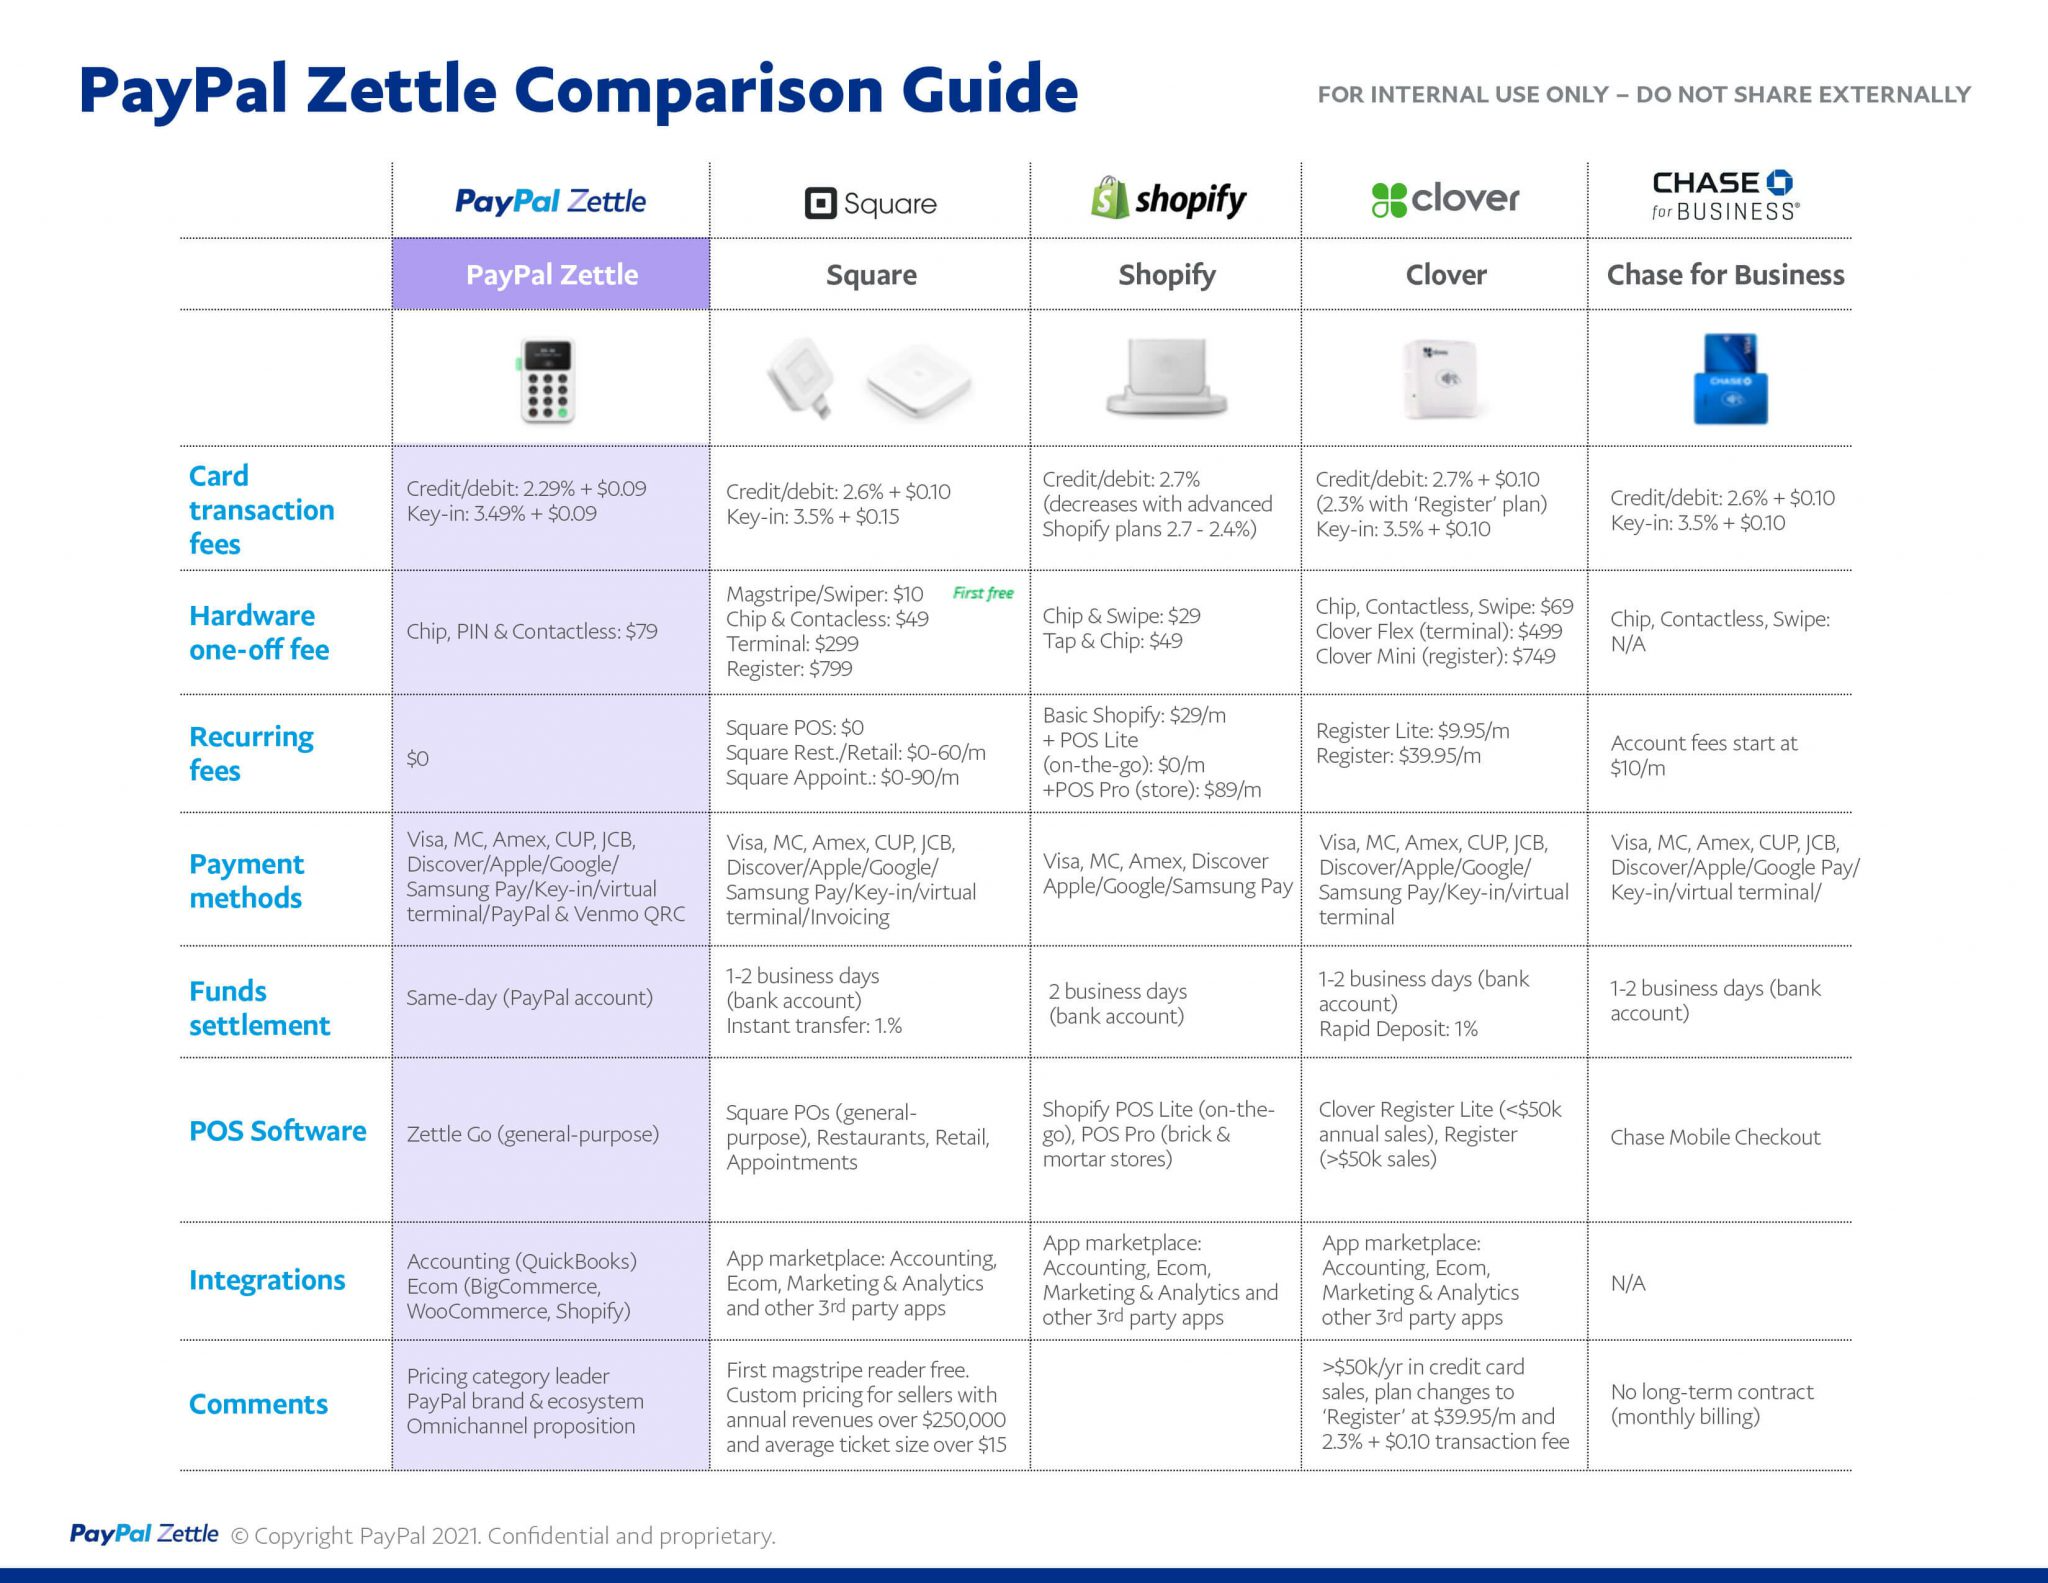 PayPal Zettle Comparison Guide